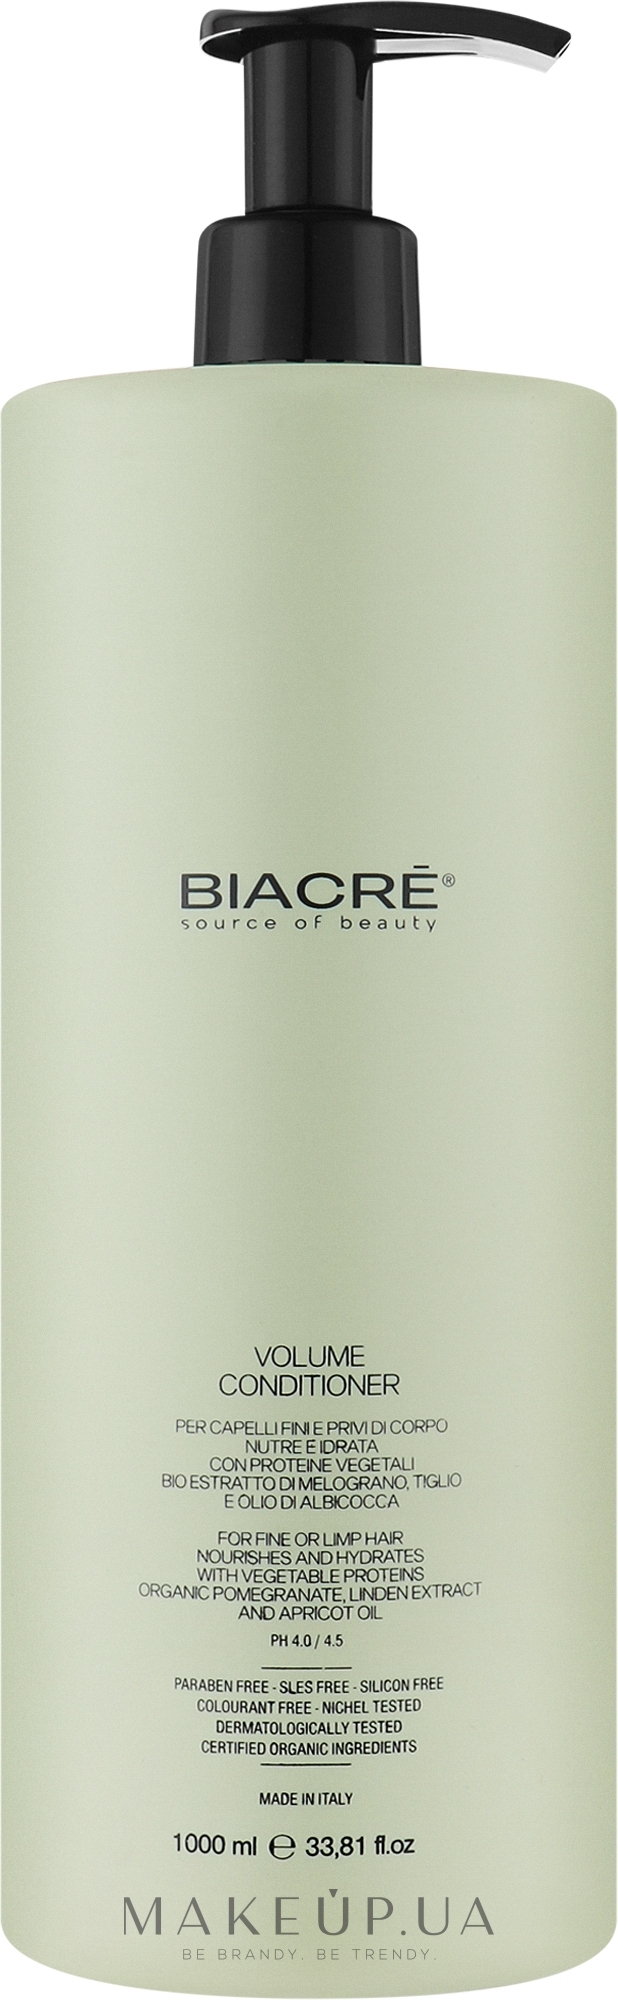 Протеиновый кондиционер для придания объёма волосам - Biacre Volume Conditioner  — фото 1000ml